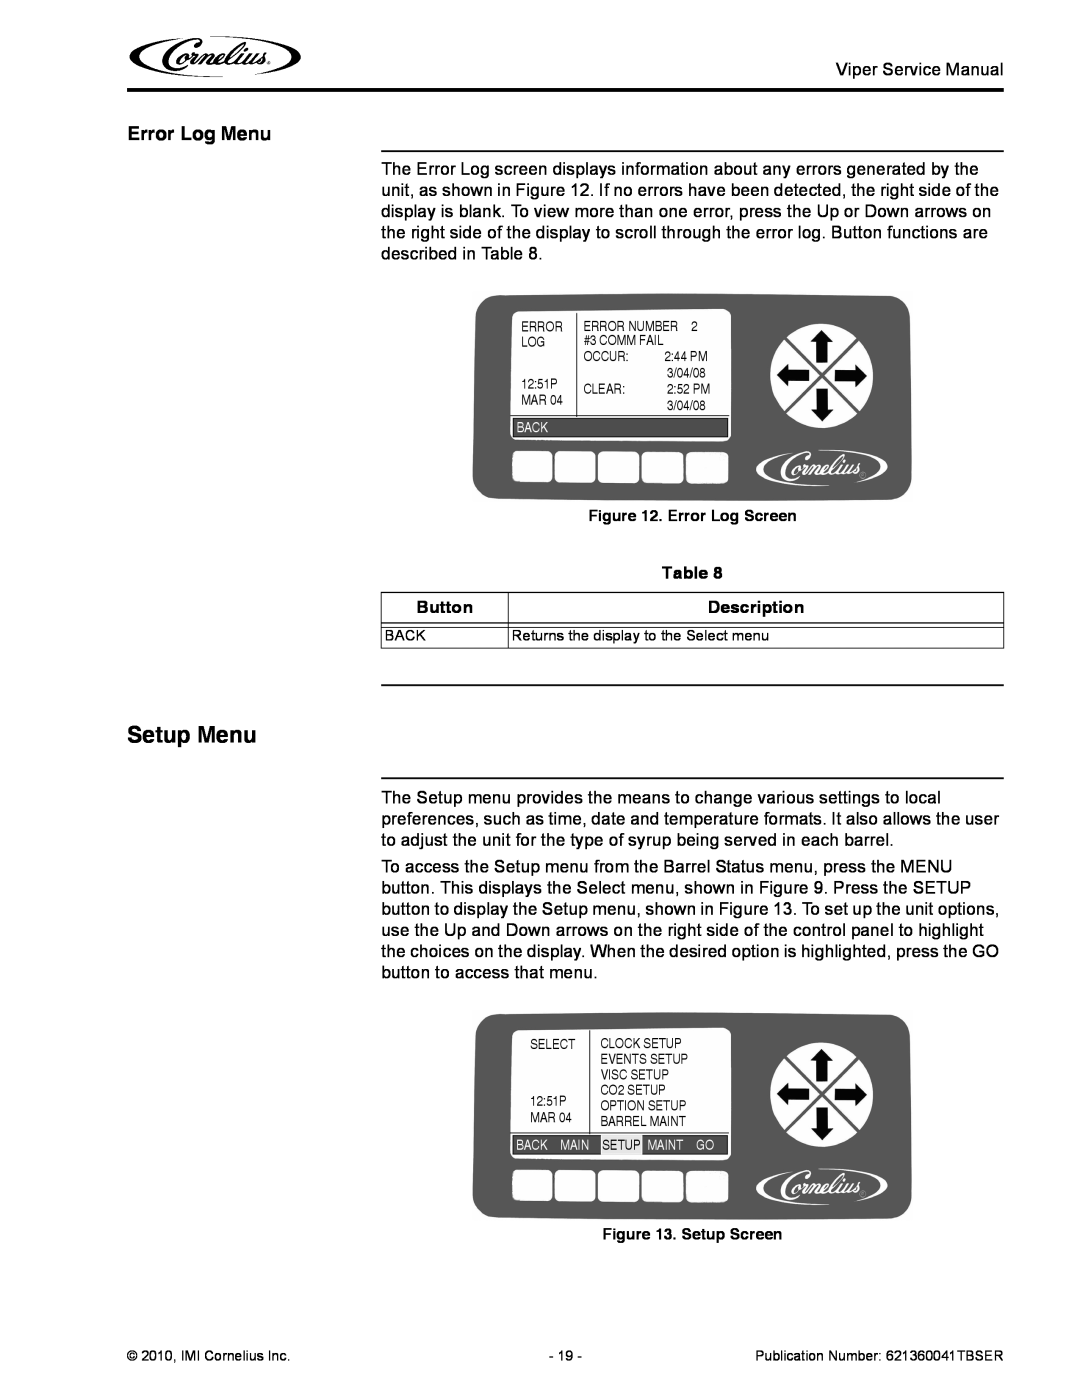 Cornelius 3 service manual Setup Menu, Error Log Menu, Button, Description 